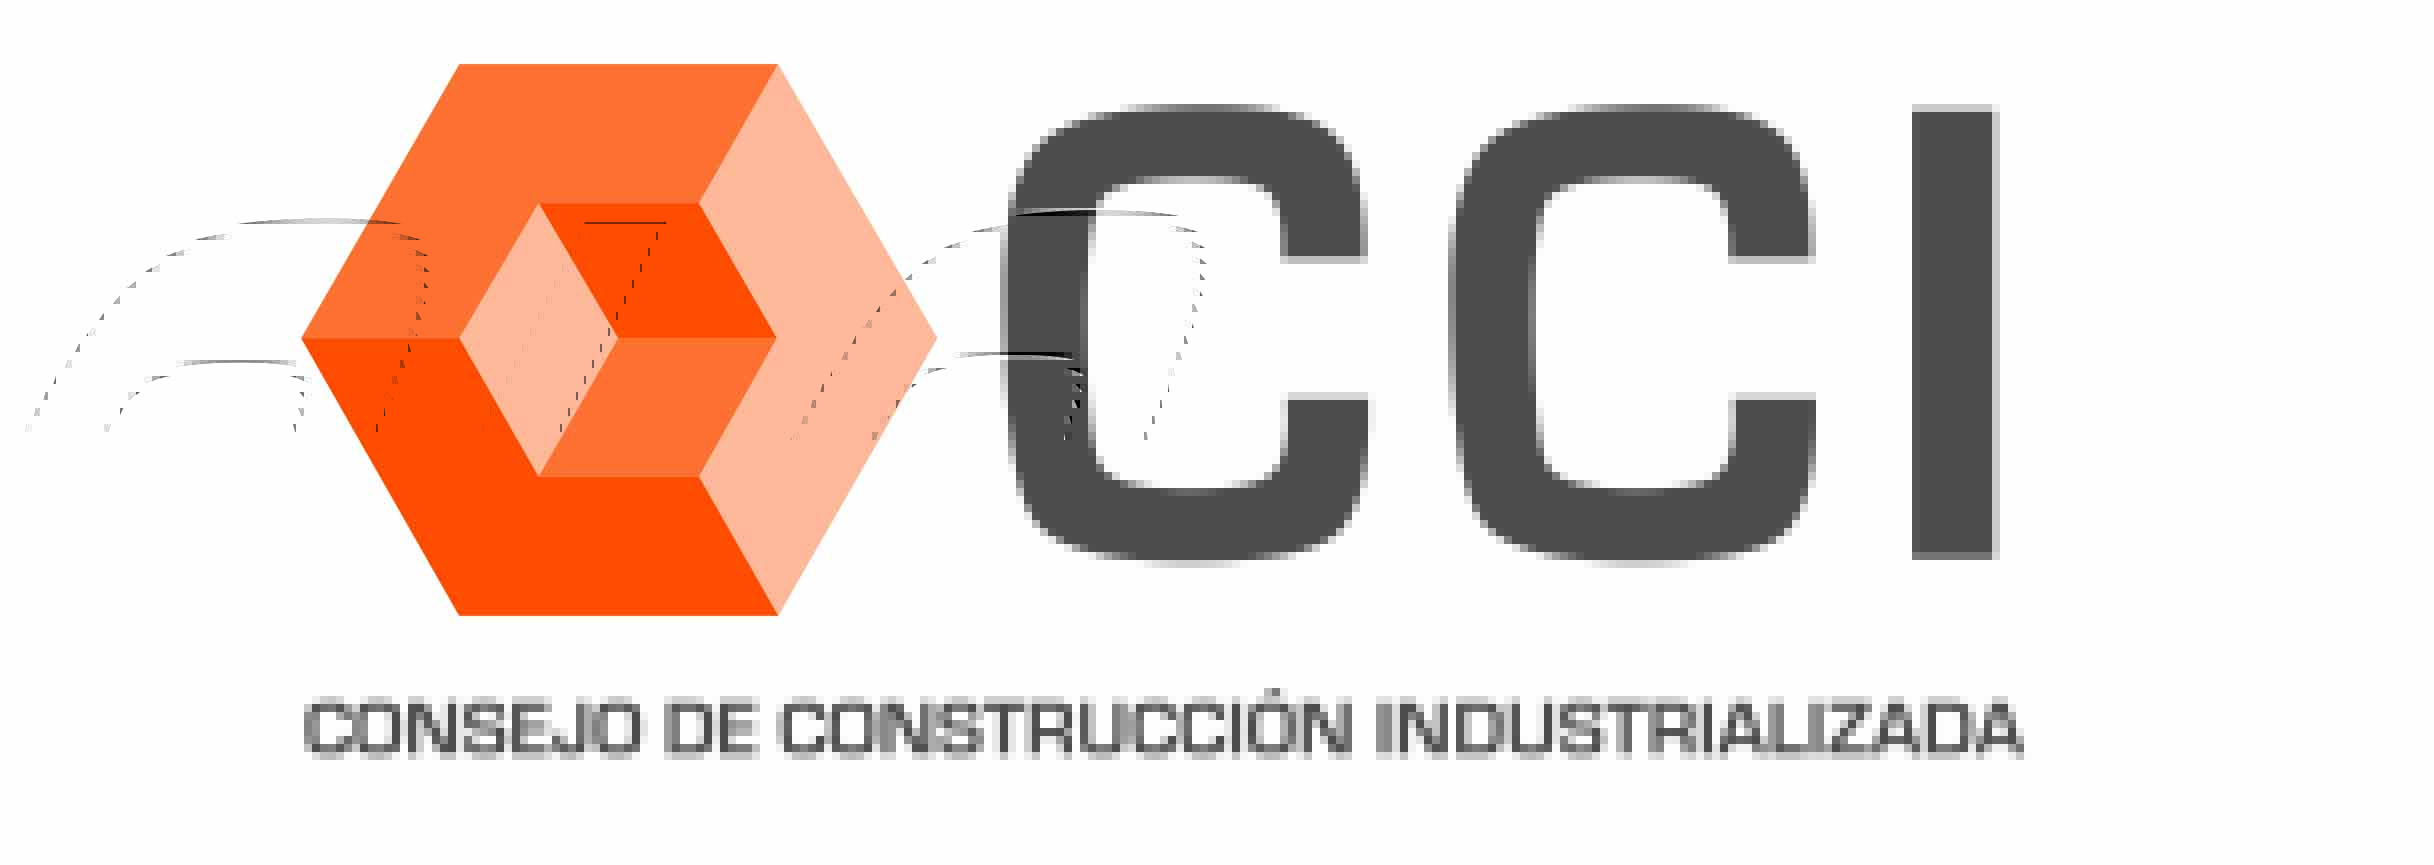 Promoviendo industrialización en la construcción en Chile